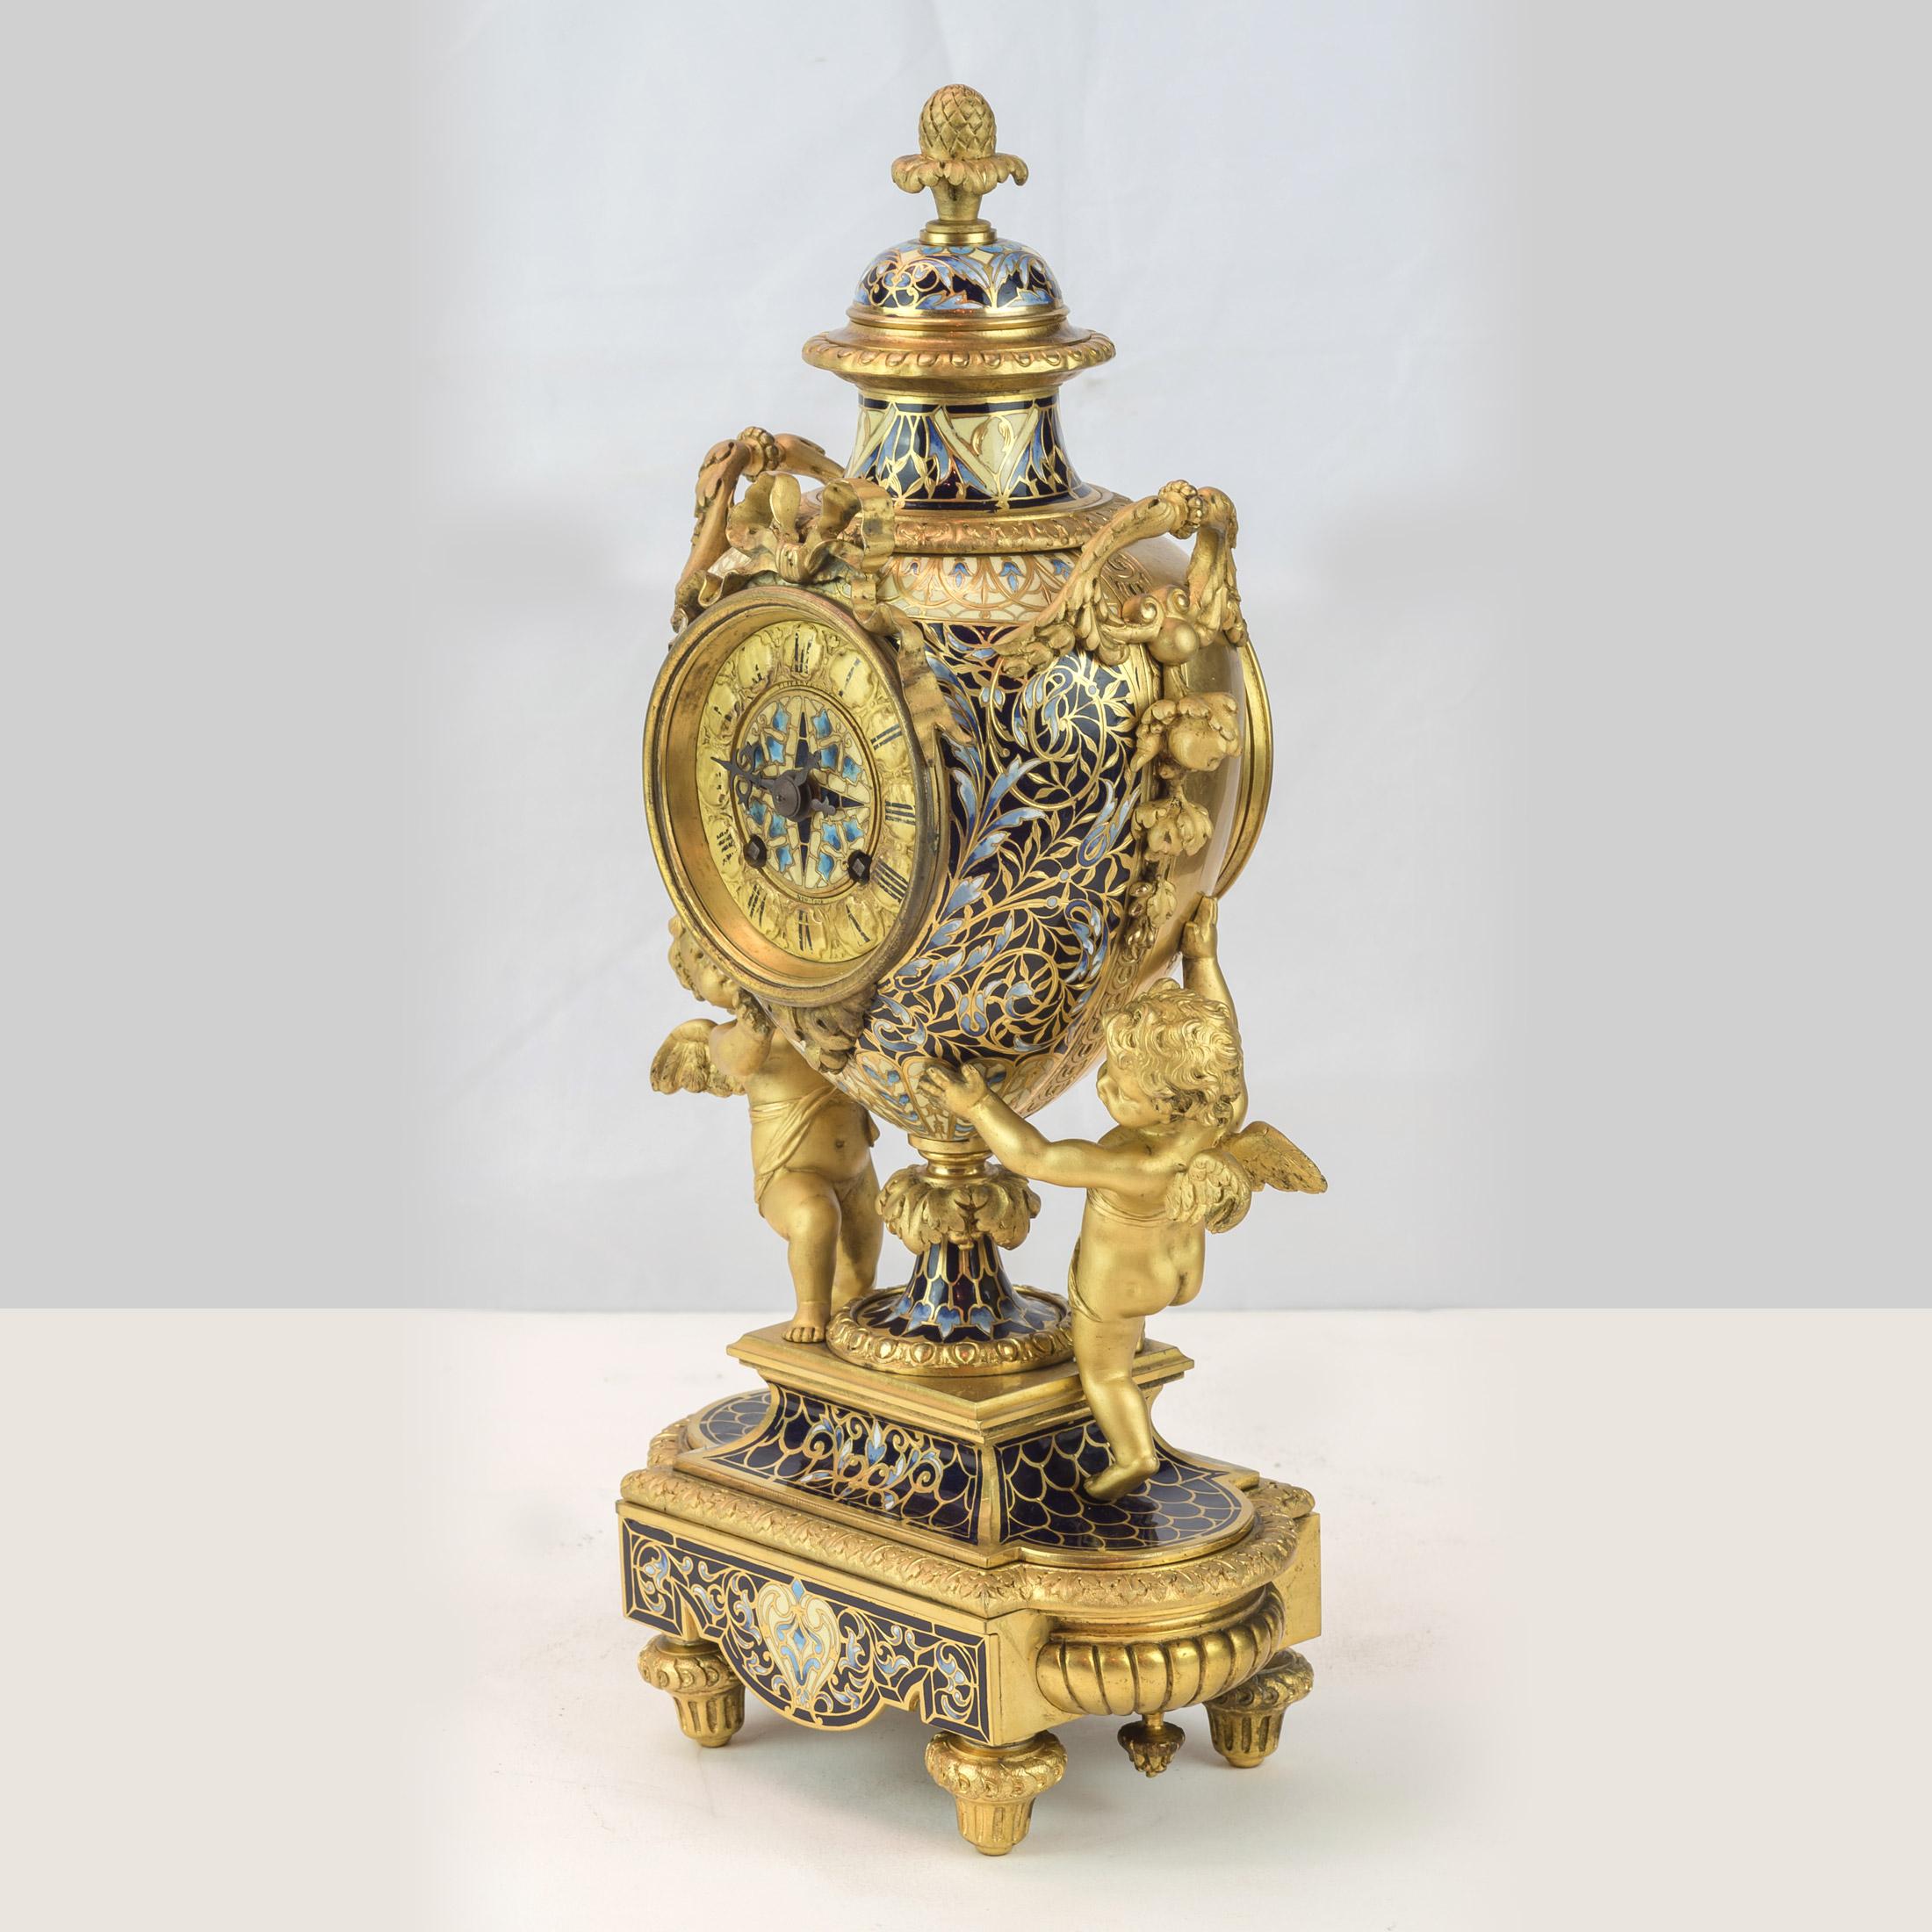 Uhr im Stil Louis XV mit Emaille und vergoldeter Bronze
Das urnenförmige Gehäuse, in dem ein Uhrwerk untergebracht ist, wird von einer Flambeau-Trophäe gekrönt. Das Emailzifferblatt mit schwarz emaillierten römischen Ziffern wird von zwei